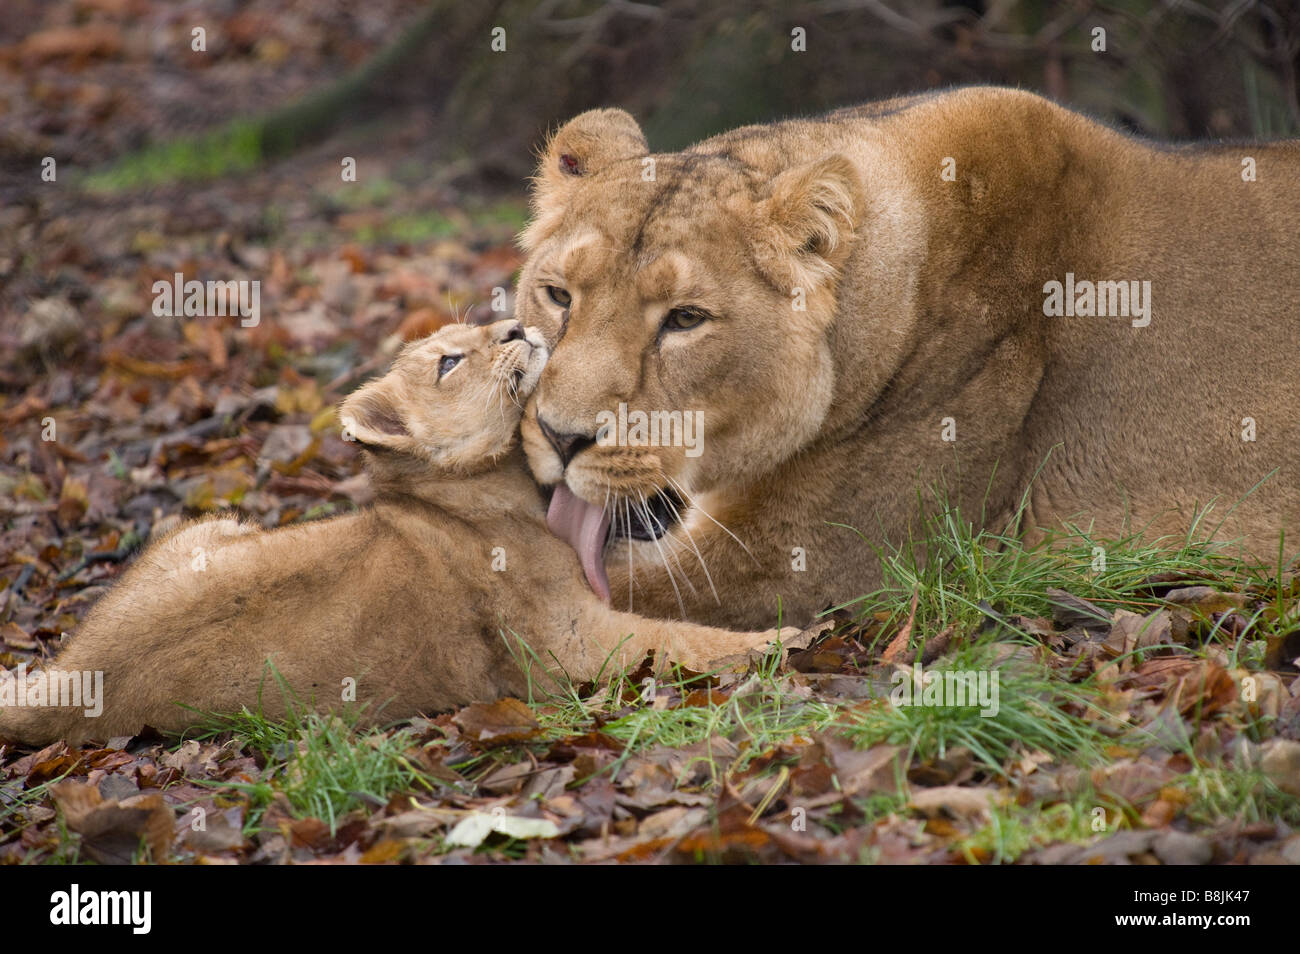 Limpieza león macho cachorro de león en el Zoológico de Chester, Cheshire. Cachorro de león fue posteriormente puesto para dormir debido a un trastorno genético. Foto de stock